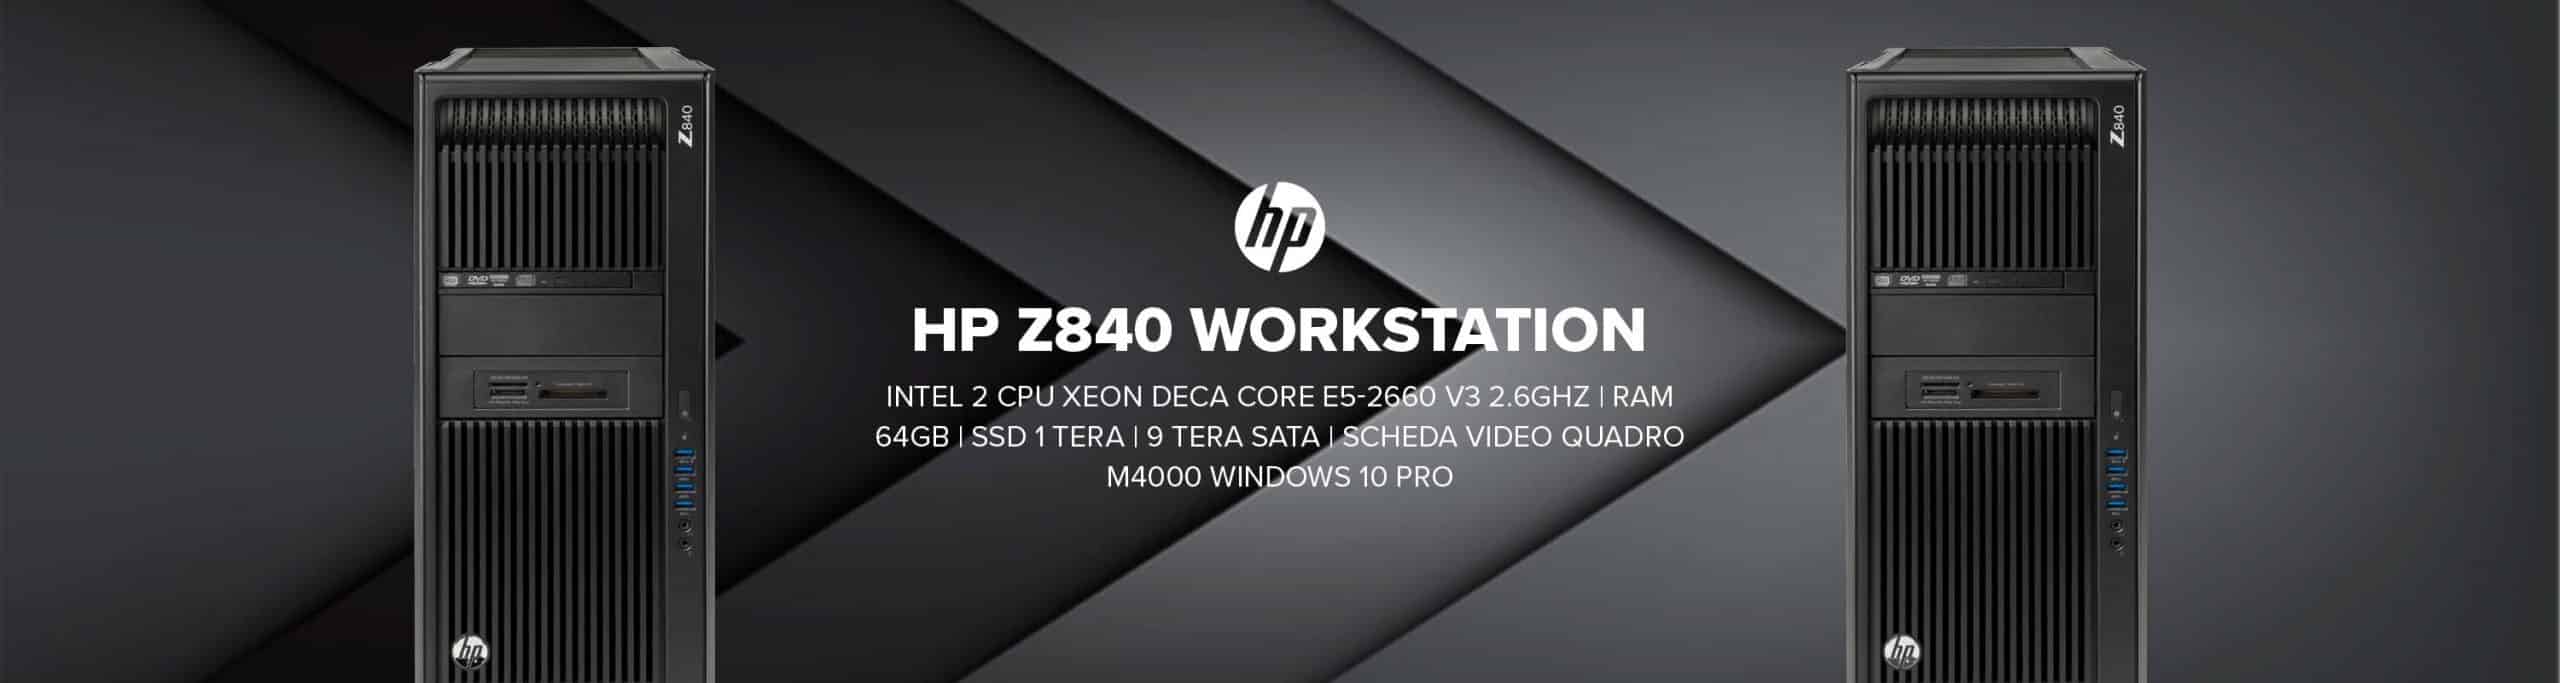 HP Z840